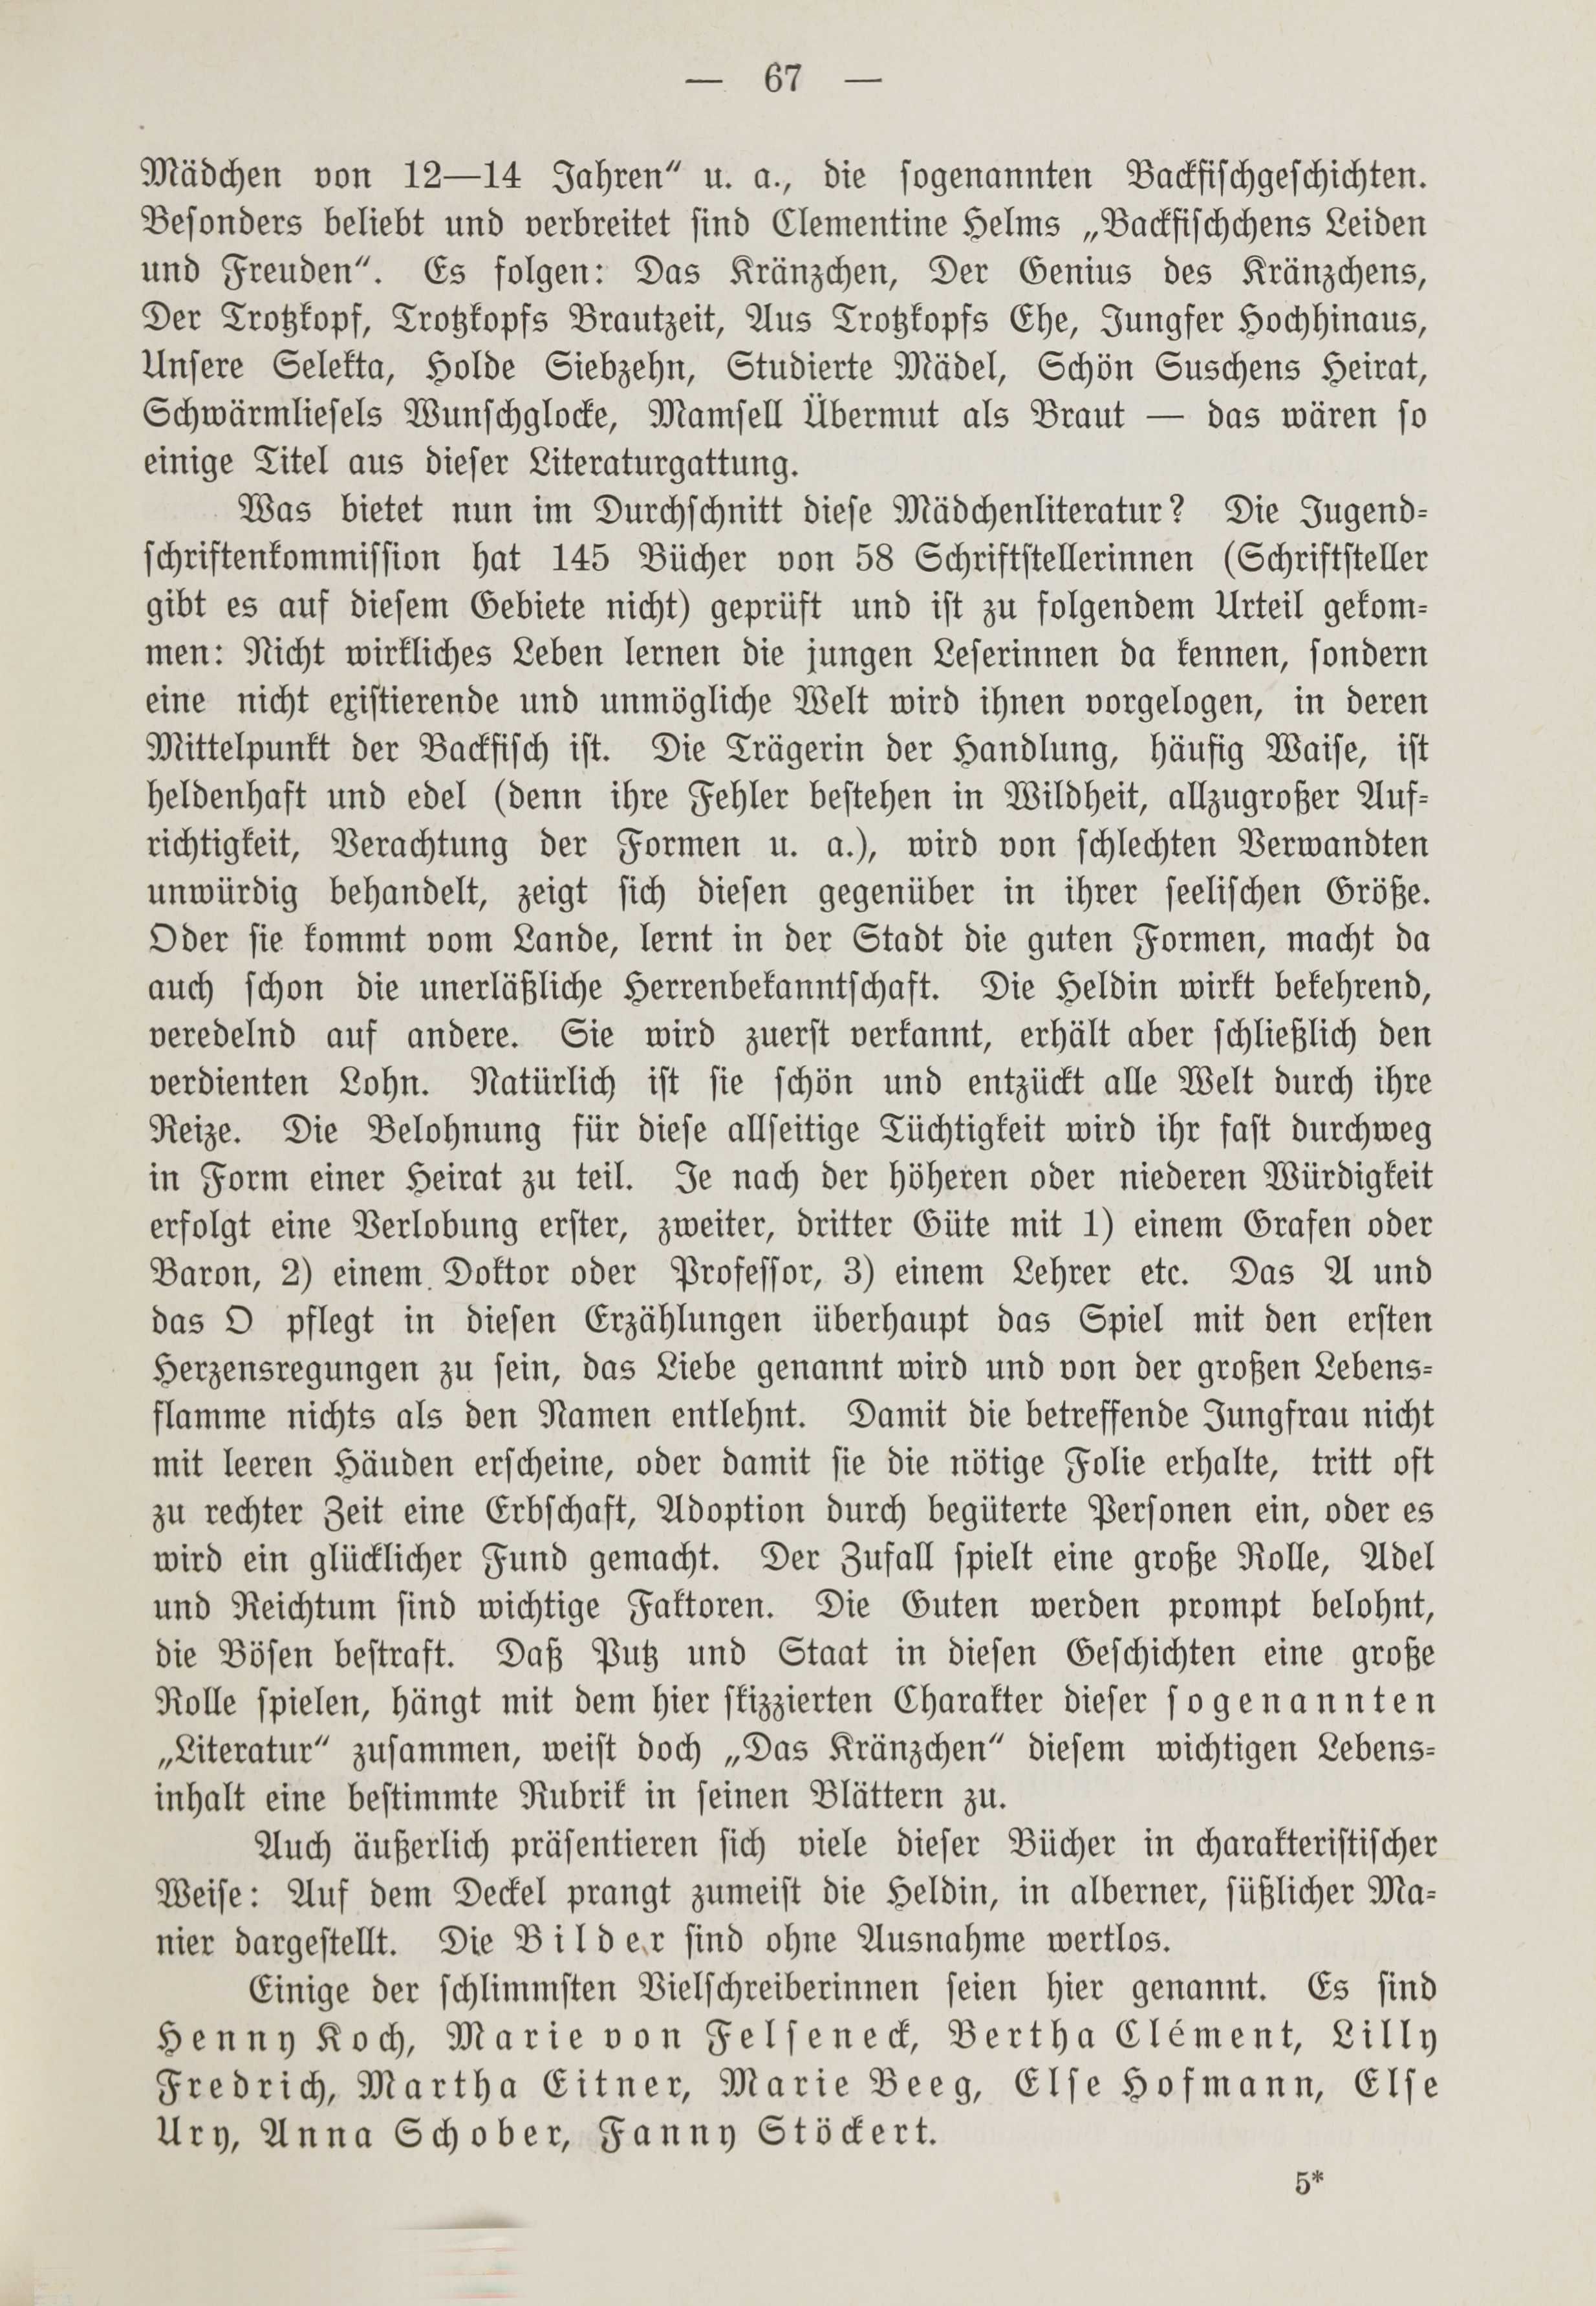 Deutsche Monatsschrift für Russland [1] (1912) | 74. (67) Haupttext